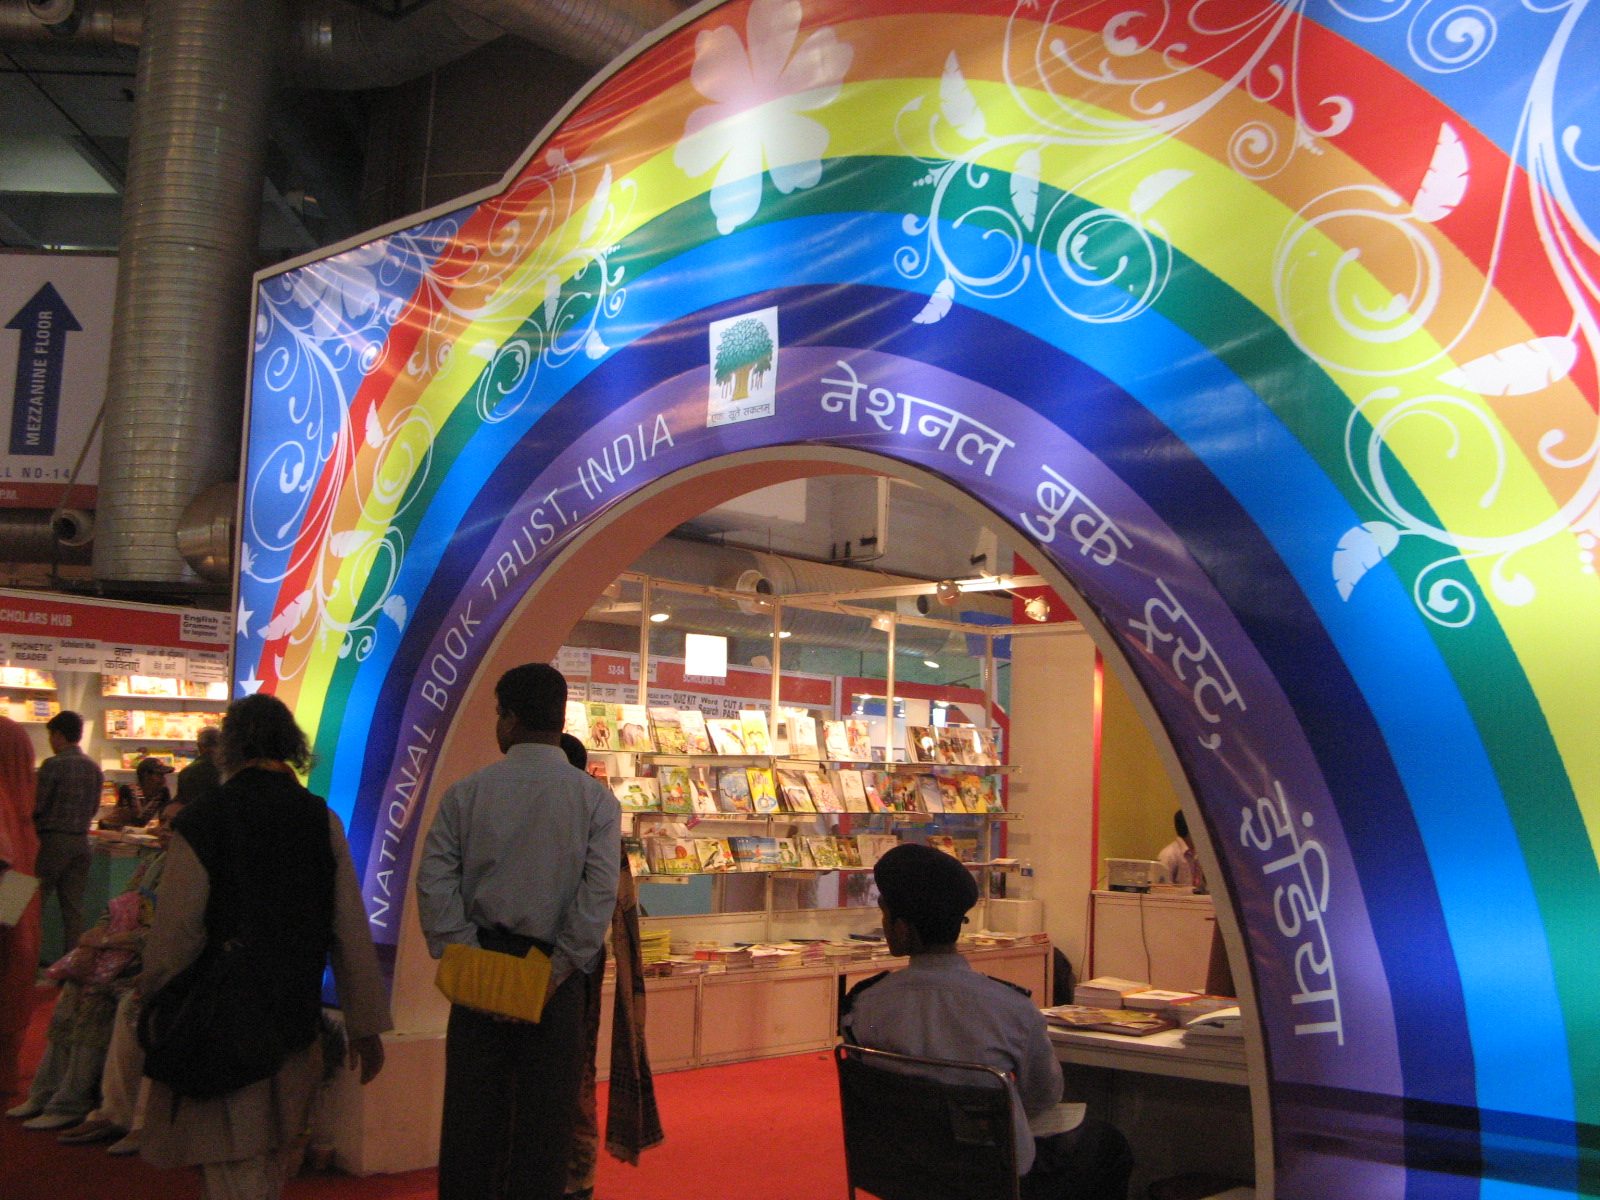 20th New Delhi World Book Fair